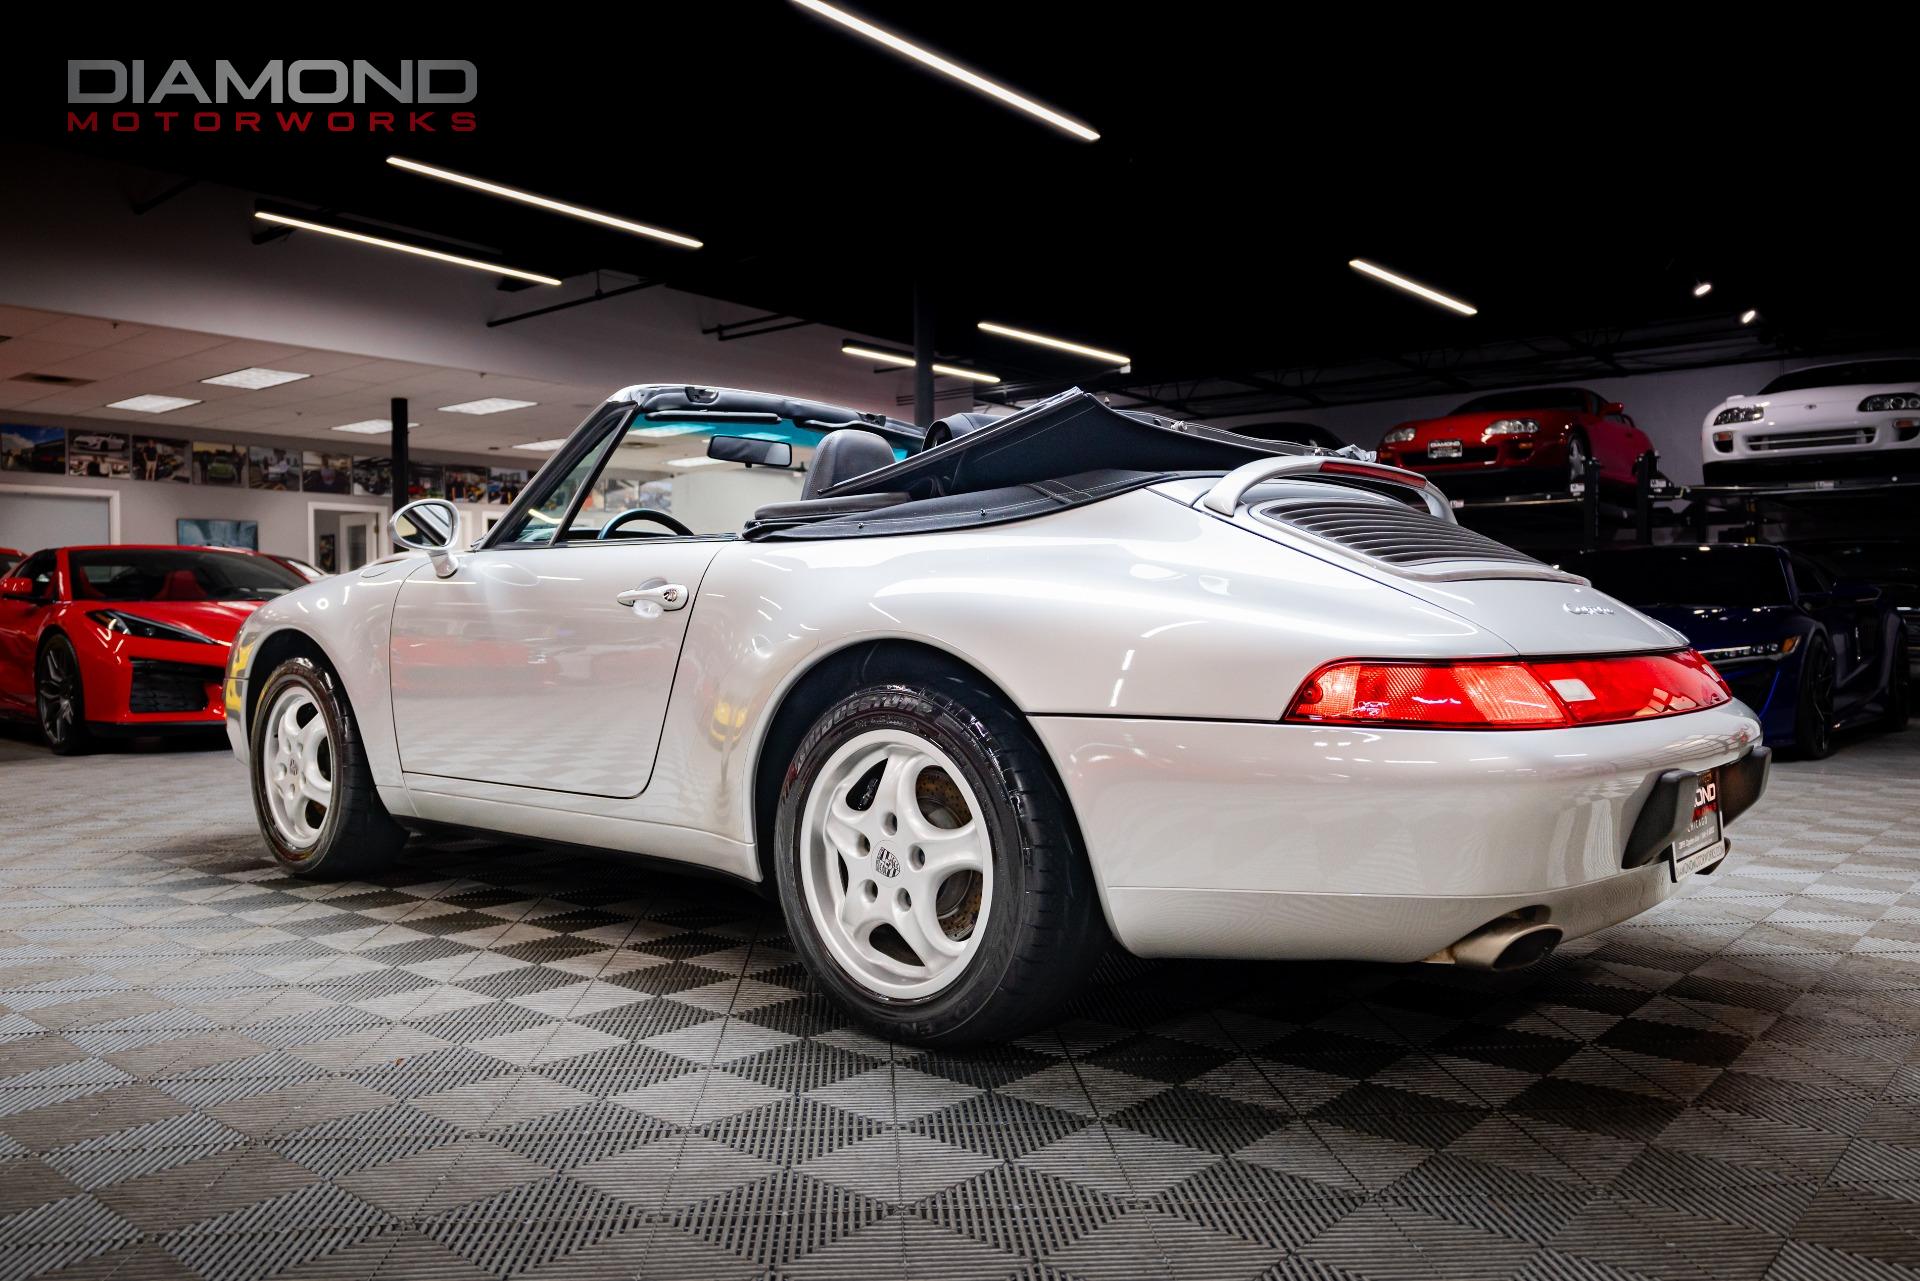 Used 1997 Porsche 911 Carrera For Sale ($78,800) | Diamond 